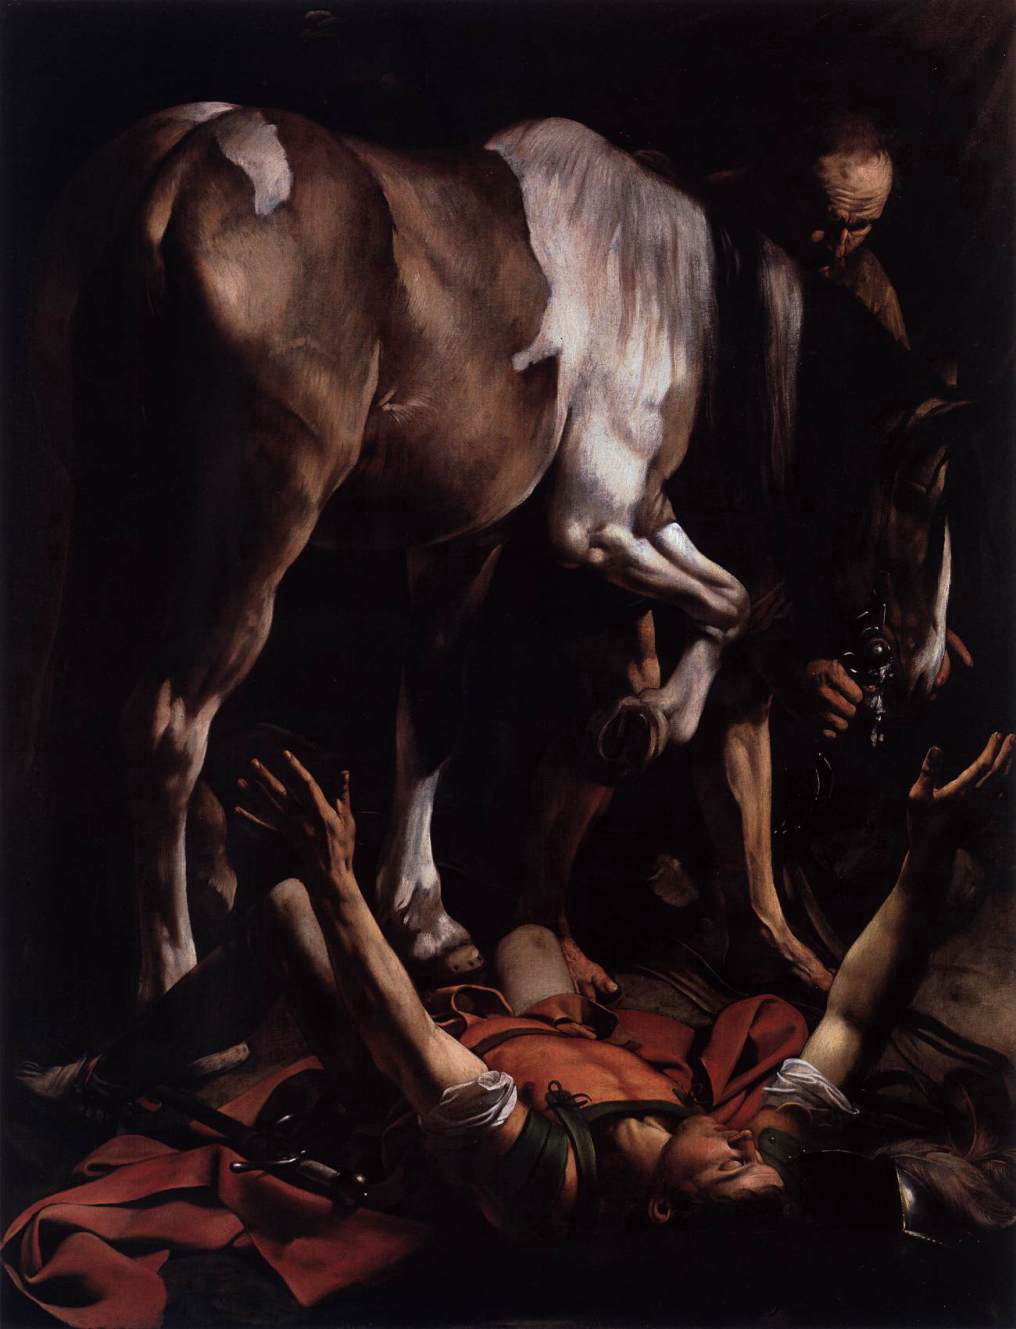 カラヴァッジョ　「聖パウロの改宗」　 1600　　Oil on canvas, 230 x 175 cm　　ローマ、サンタ・マリア・デル・ポポロ聖堂、チェラージ礼拝堂